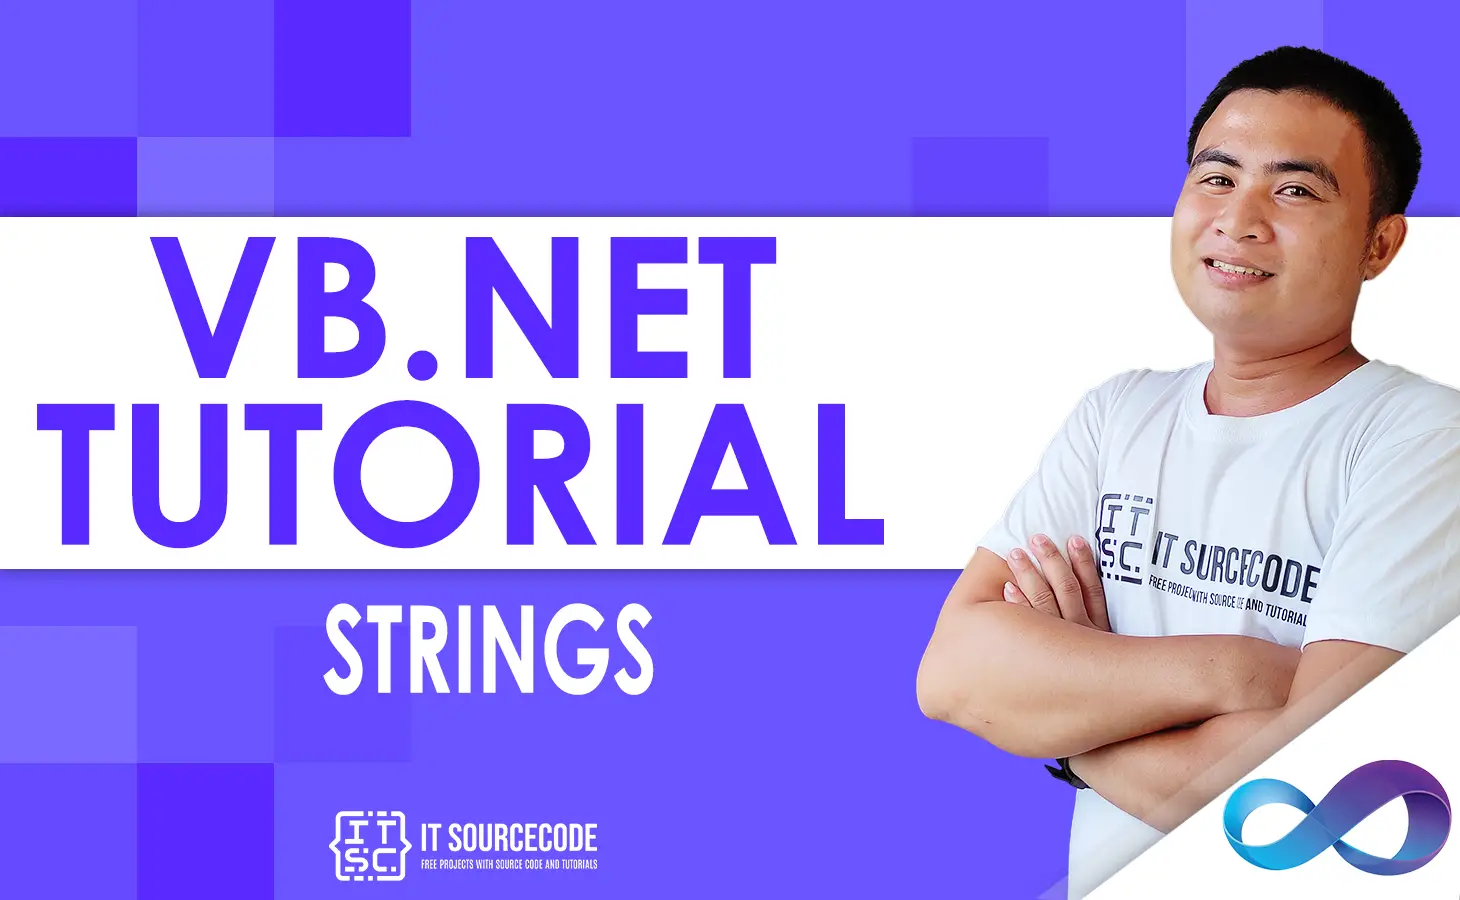 Strings in VB NET